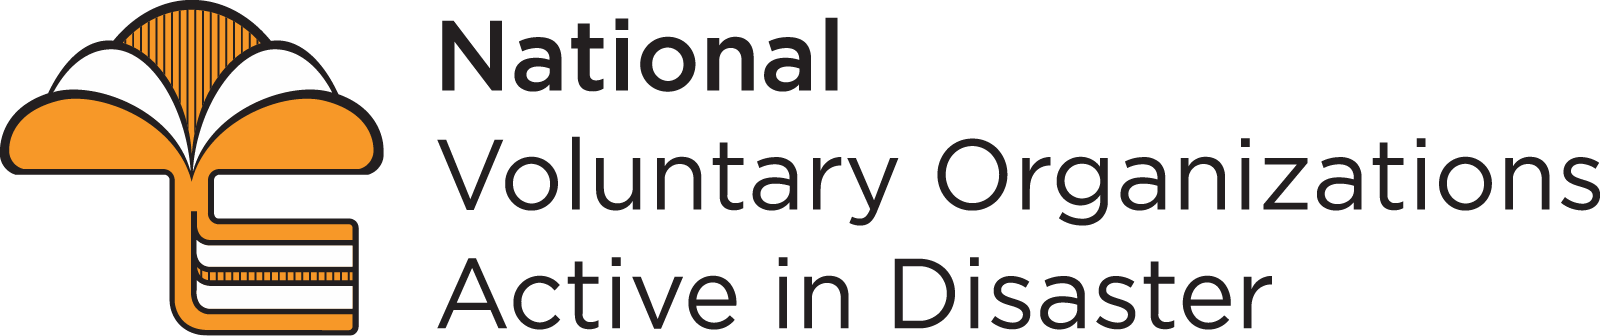 National VOAD logo